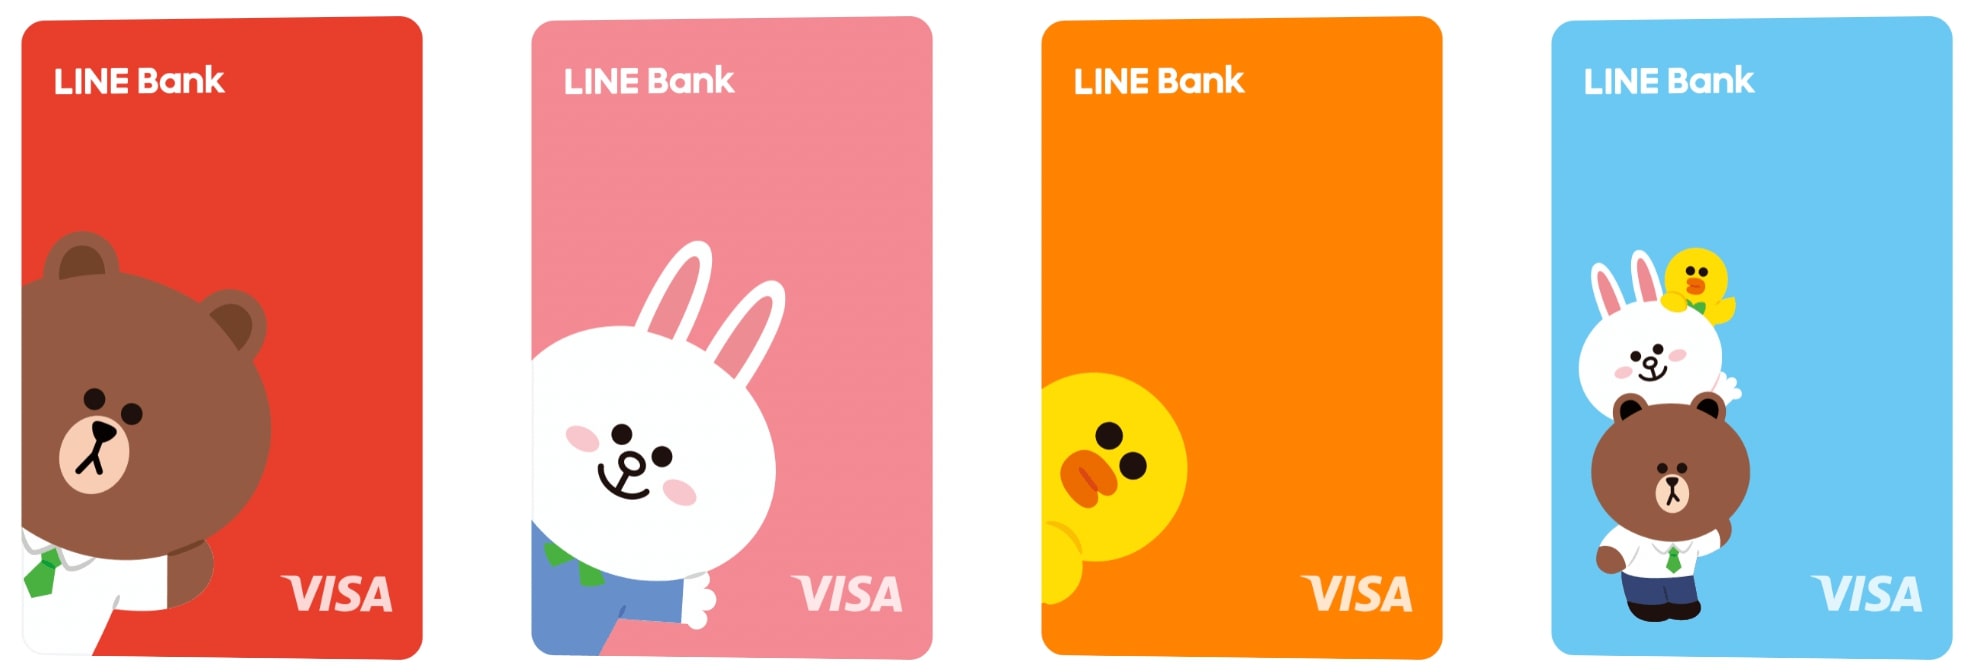 LINE Bank金融卡